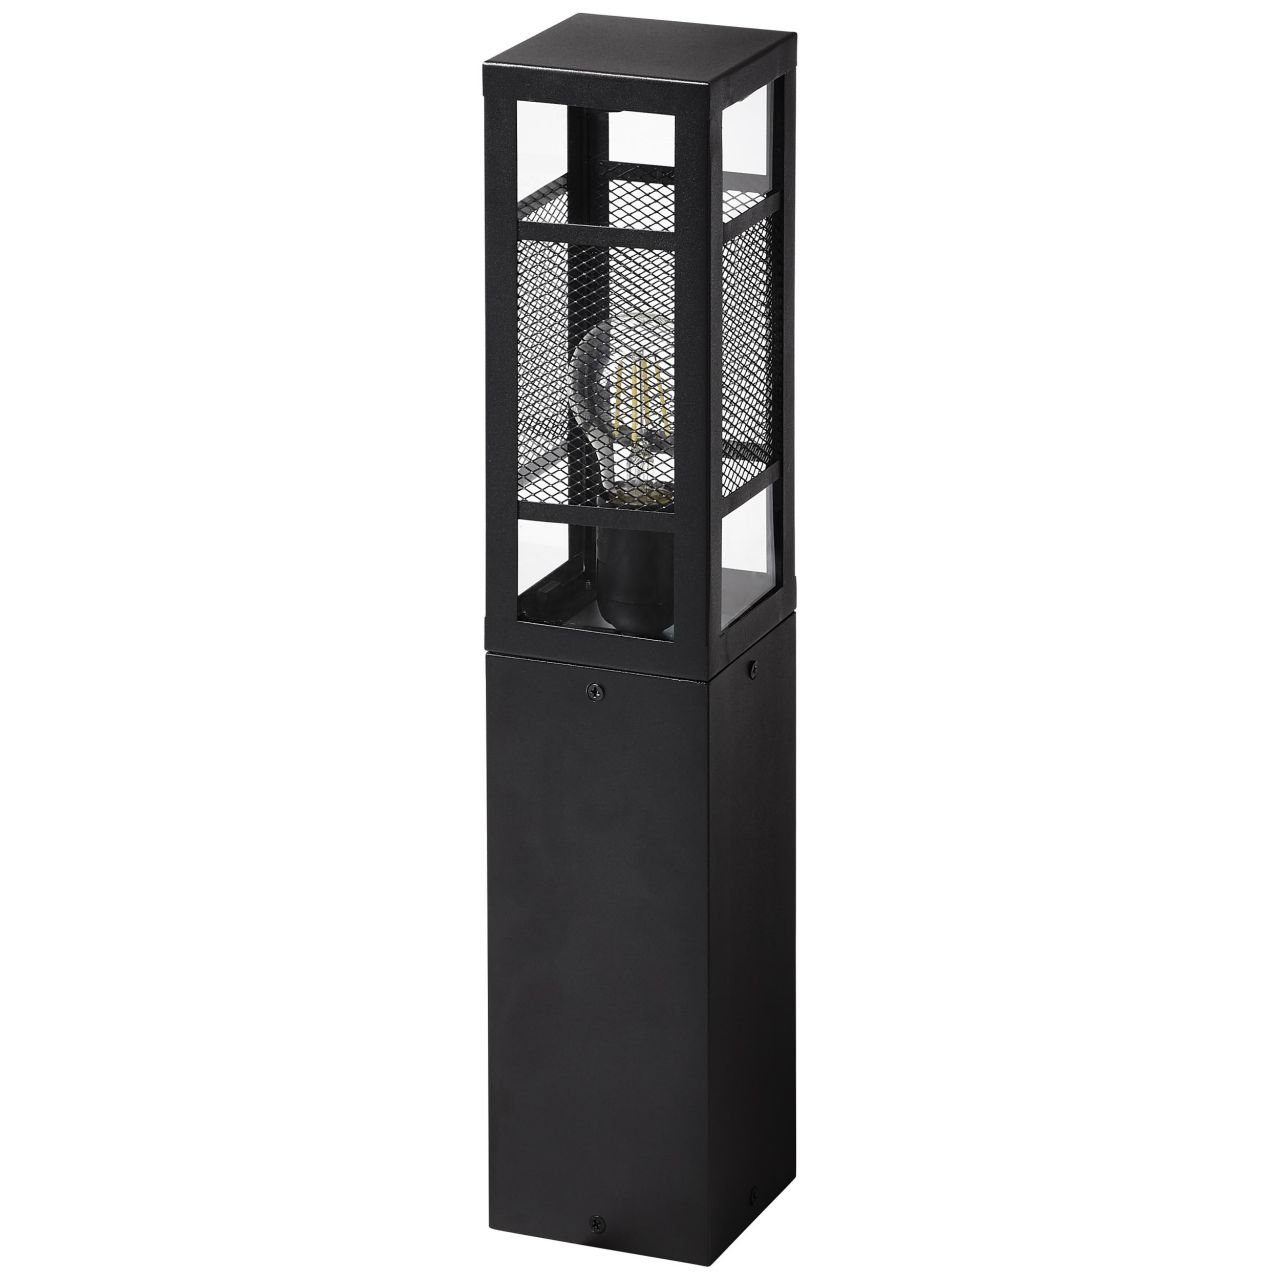 Brilliant Außen-Stehlampe Getta, 50cm schwarz, Lampe, 1x Metall/Kunststoff, Getta Außensockelleuchte A6